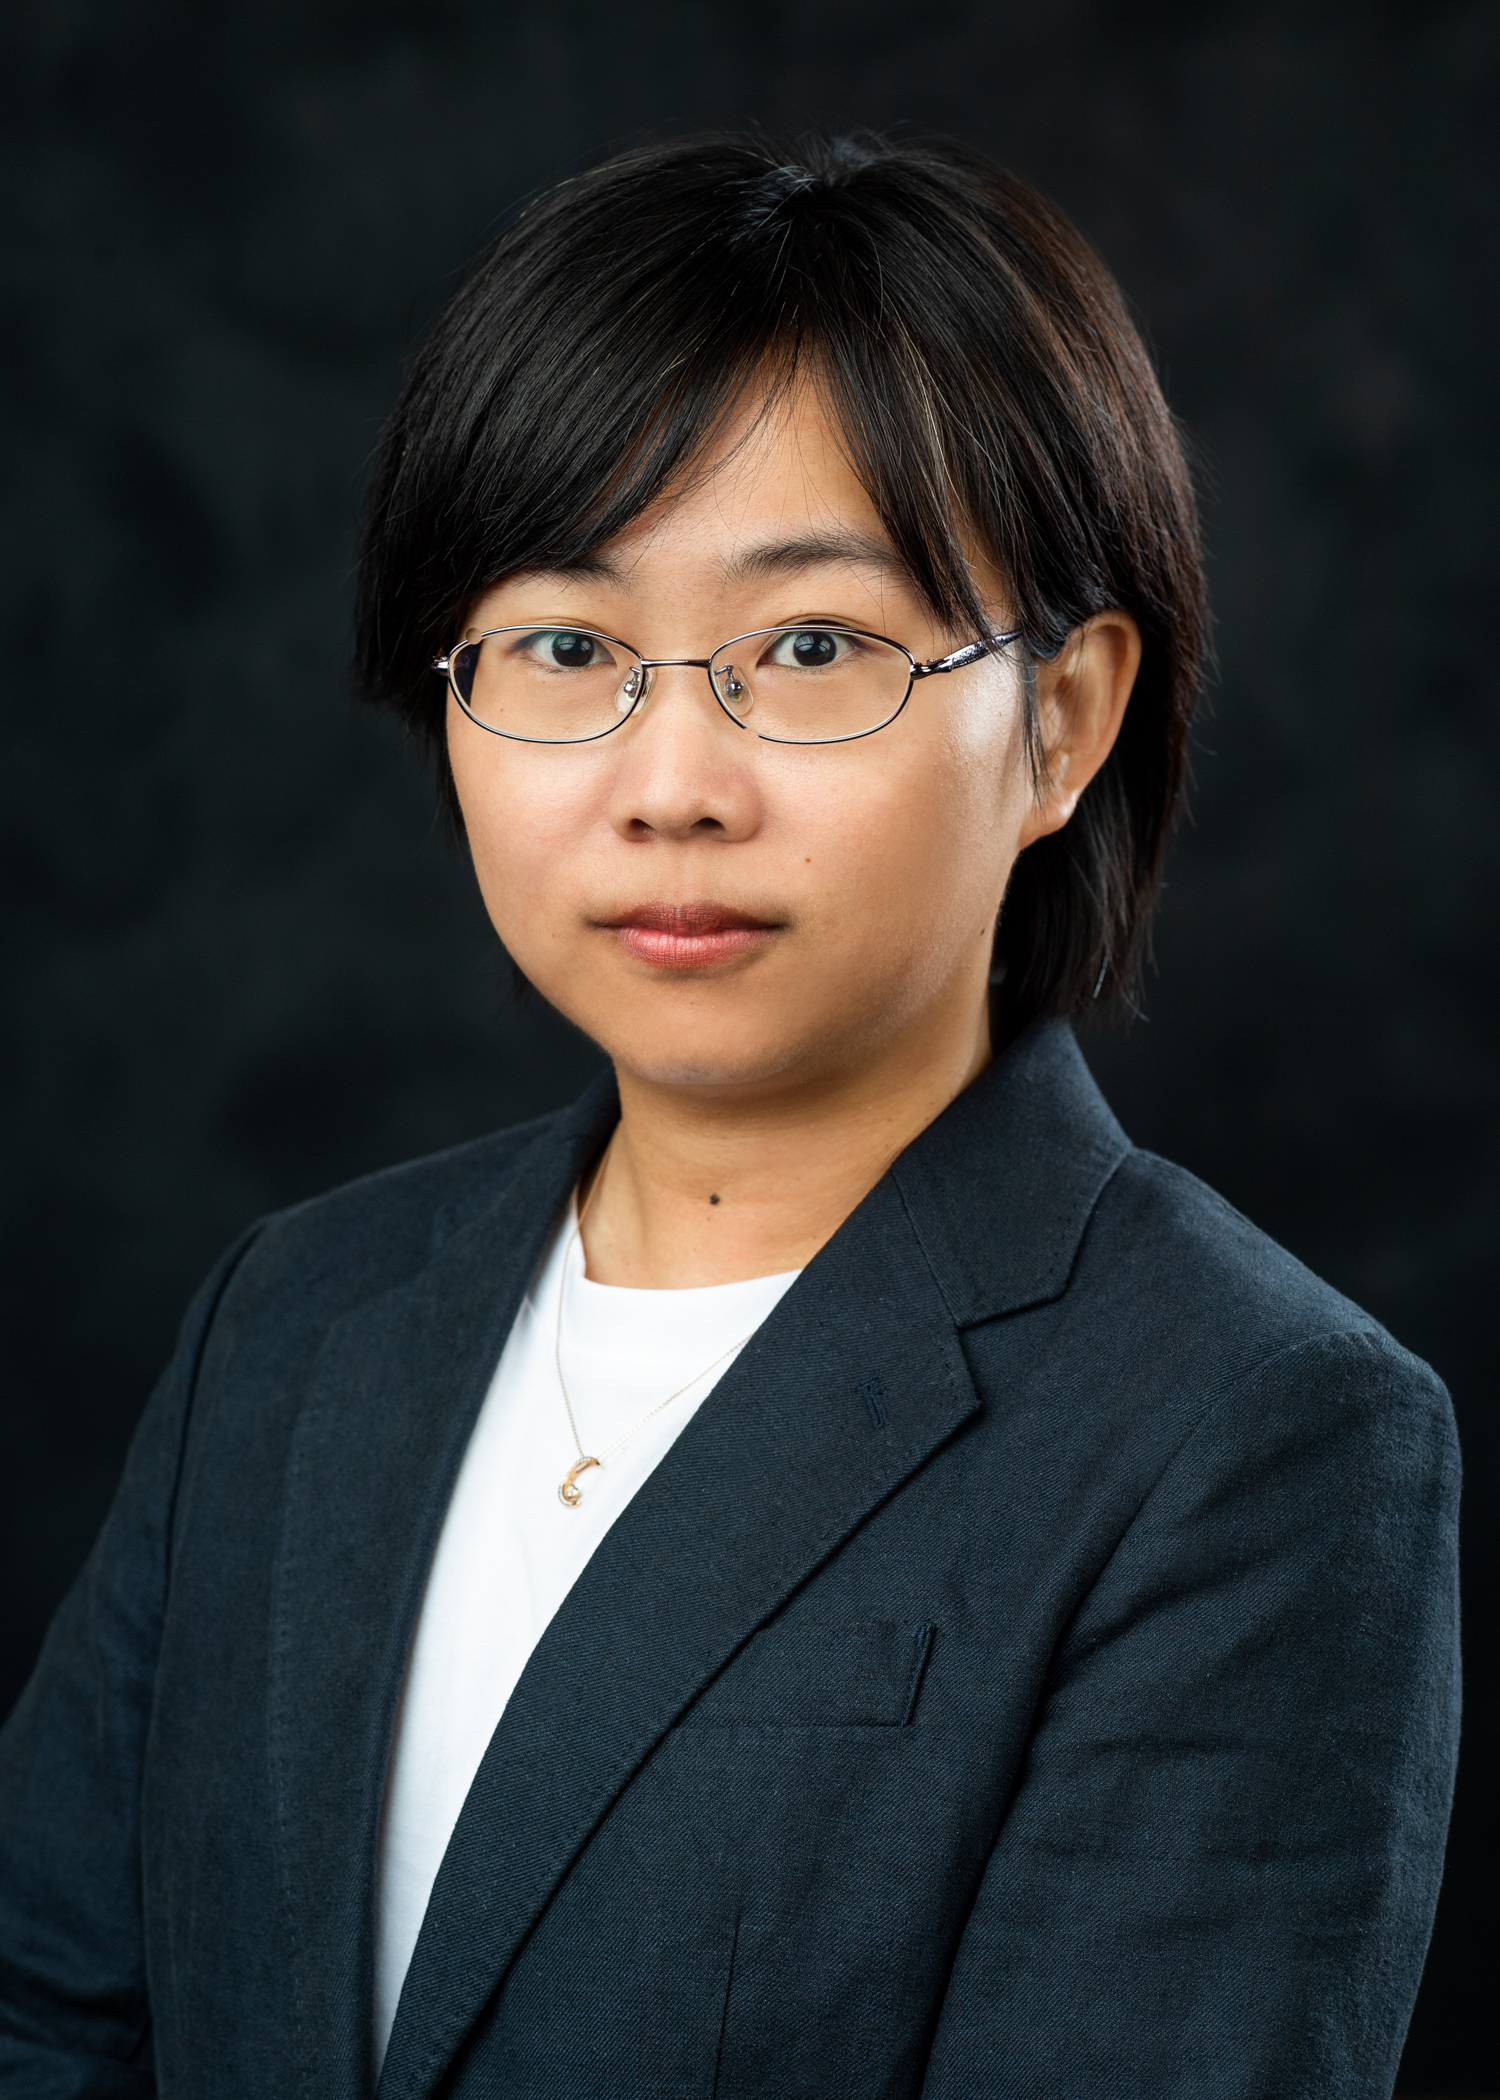  Xiaoxiao Bai PhD